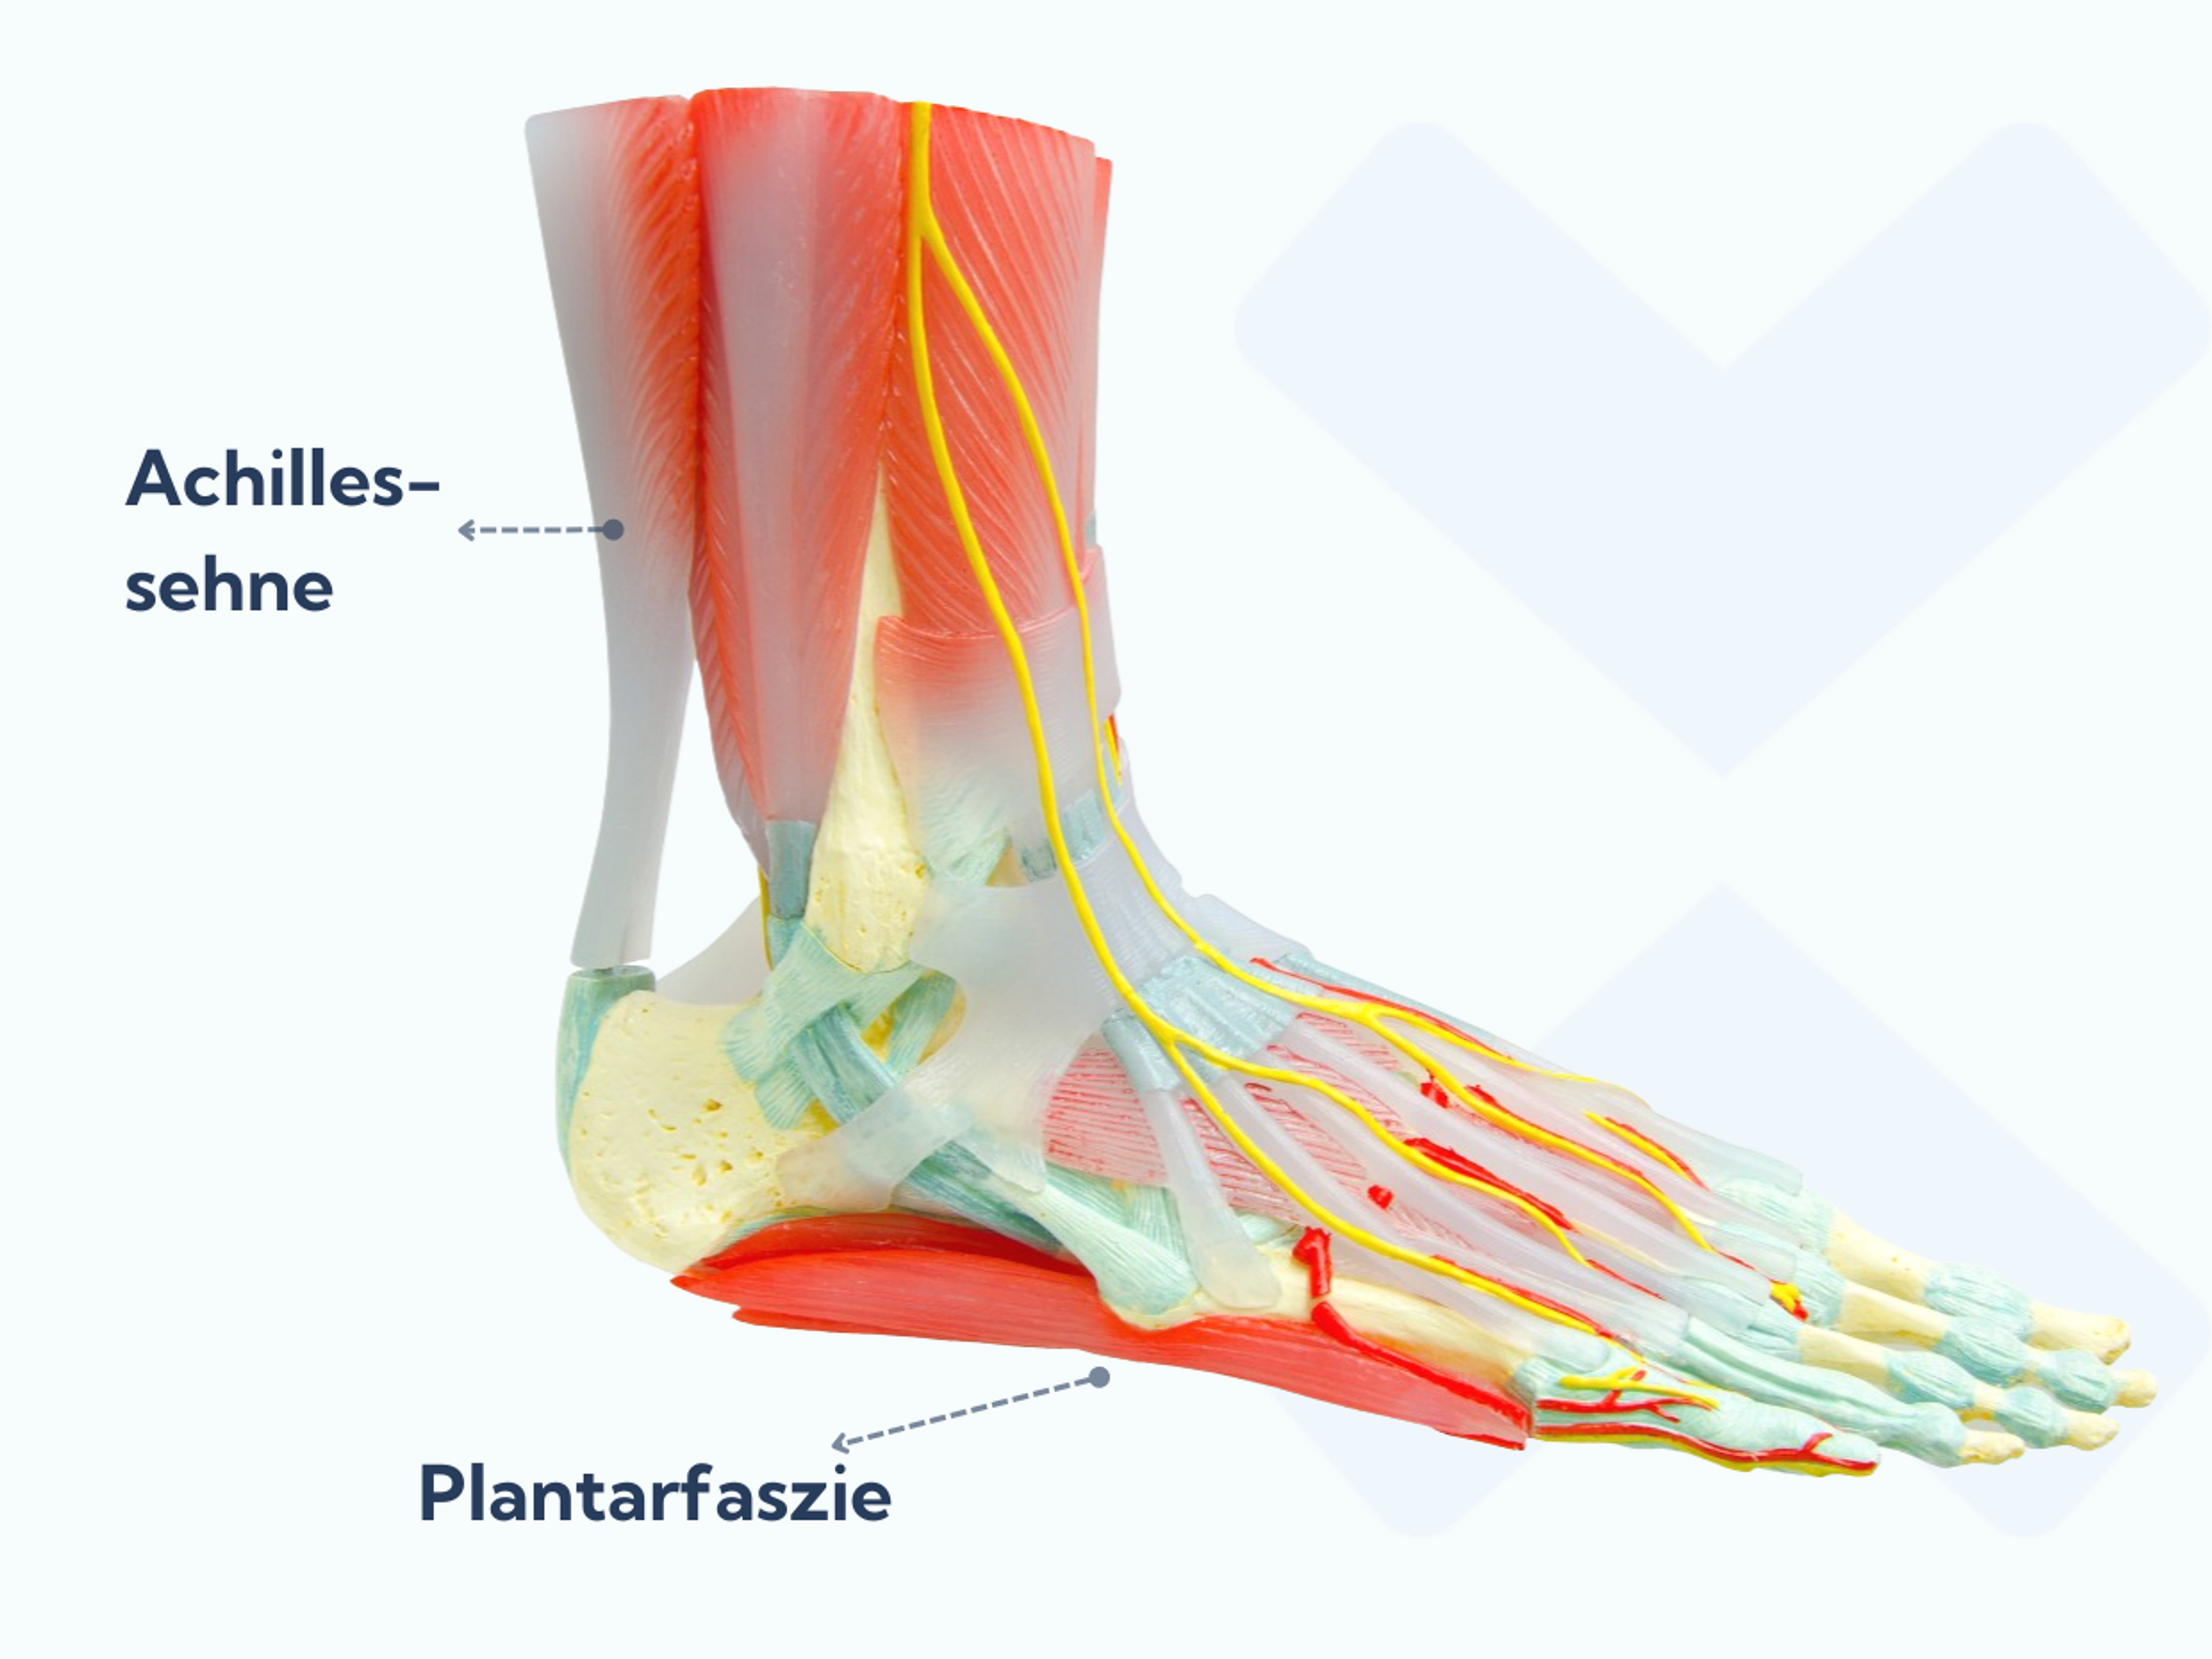 Die Plantarfaszie zieht sich vom Fersenbein bis zu den Zehen und hält das Fußgewölbe bei Belastung gewölbt. Die Achillessehne dagegen verläuft von den Wadenmuskeln zur Rückseite der Ferse.